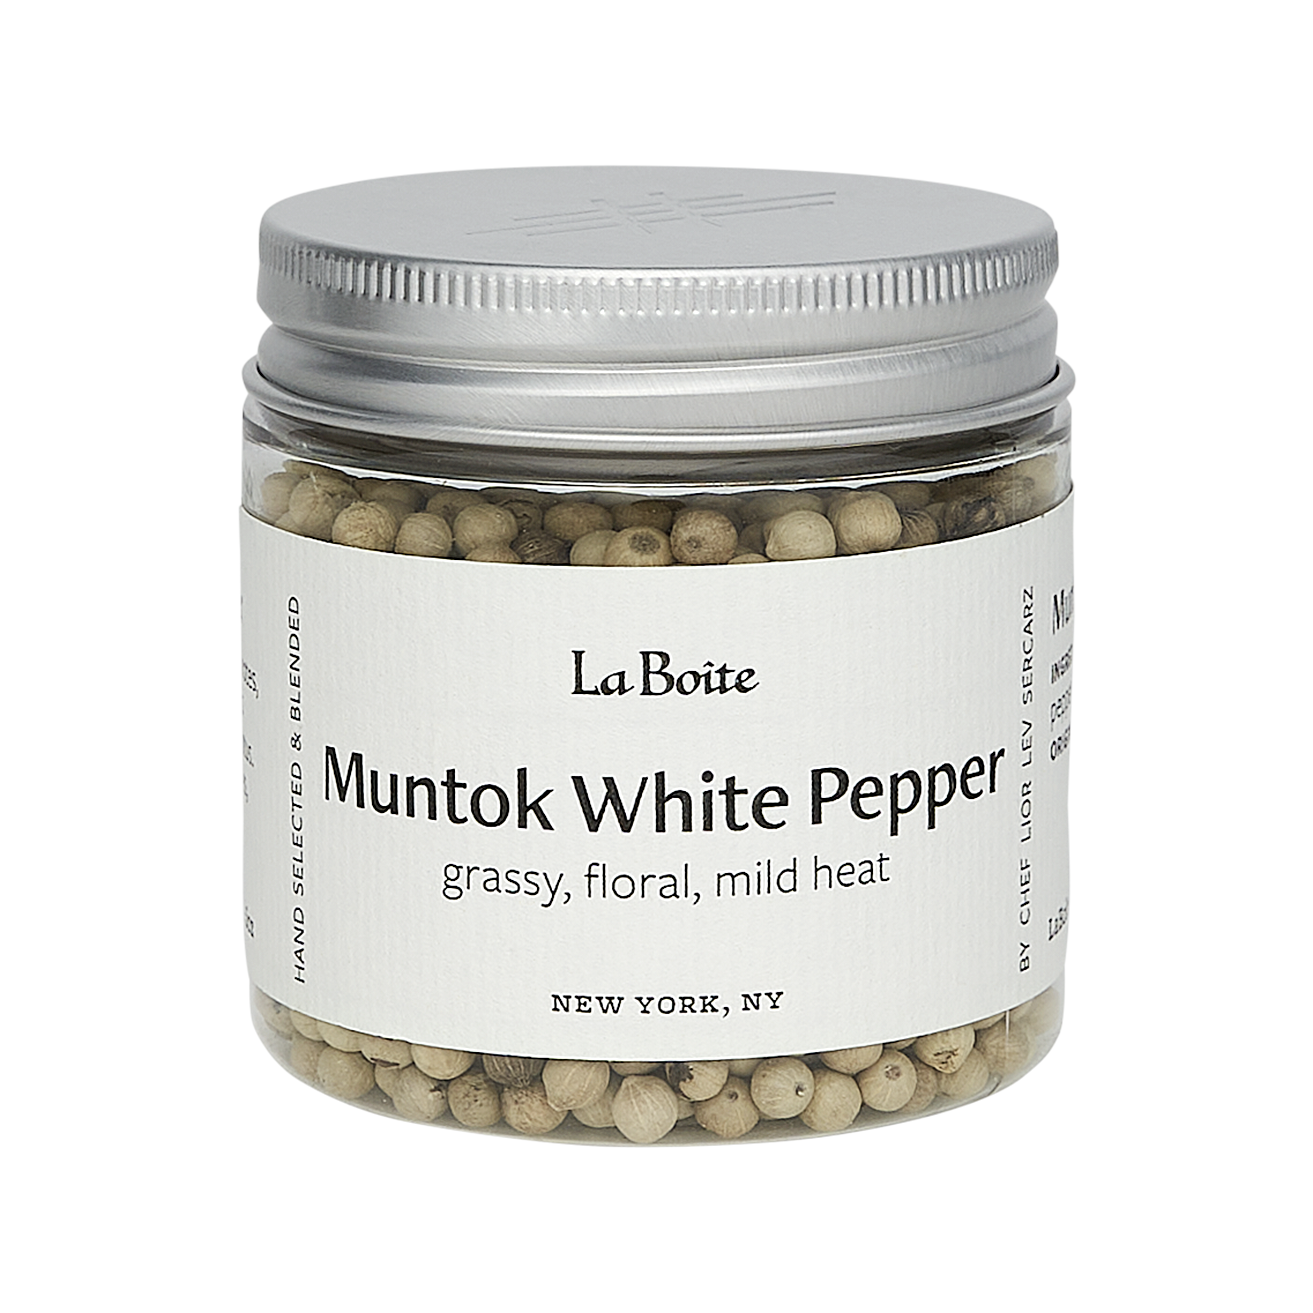 Muntok White Pepper